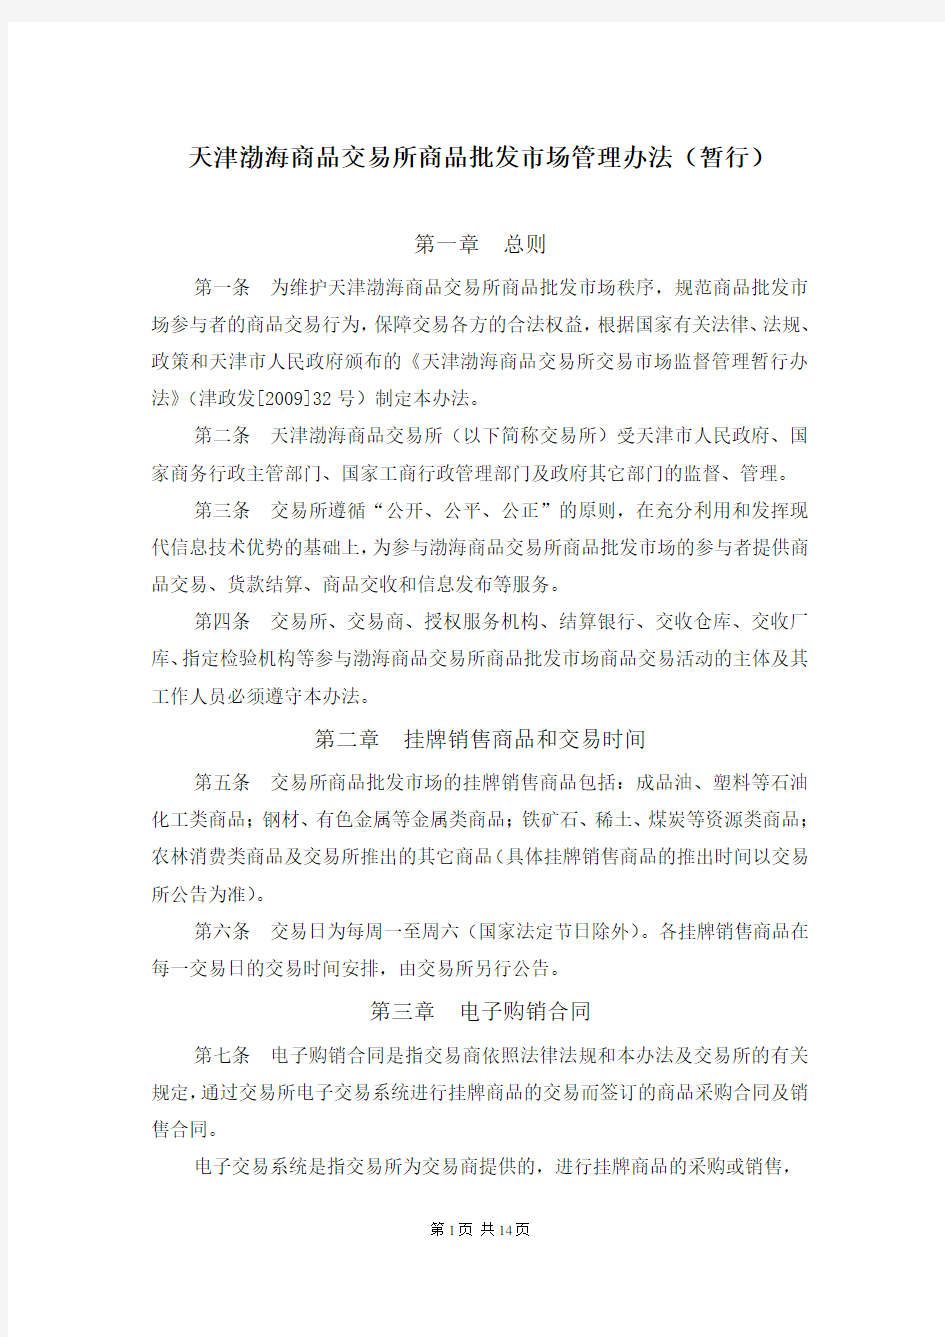 天津渤海商品交易所商品批发市场管理办法(暂行)